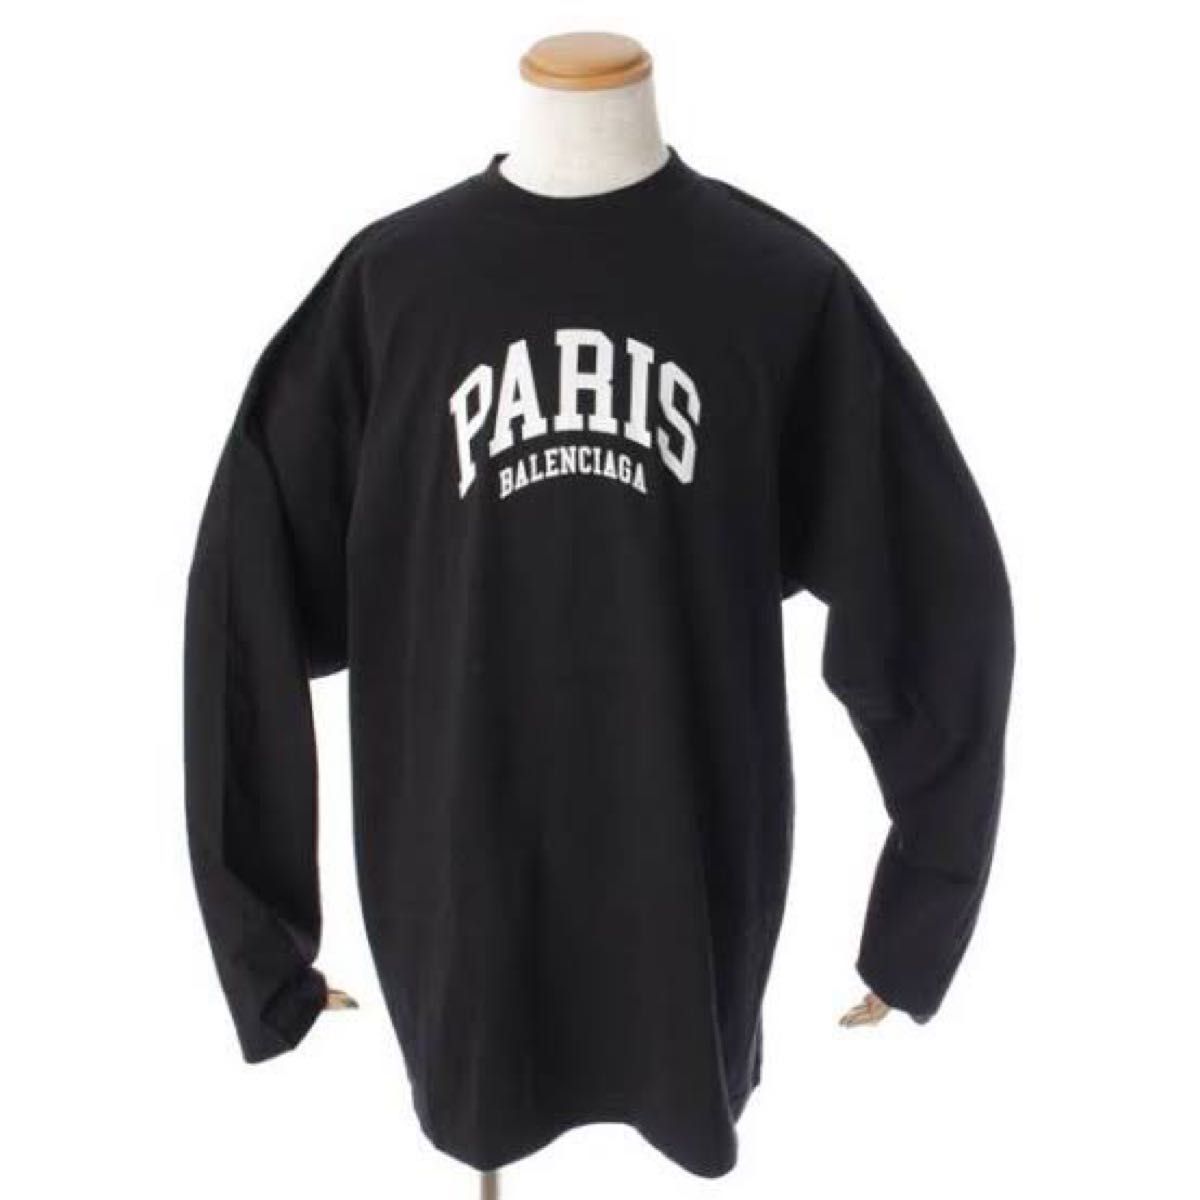 バレンシアガ(Balenciaga) メンズ PARIS ロゴ プリント ロンT 黒 M(2)サイズ 長袖Tシャツ 正規品